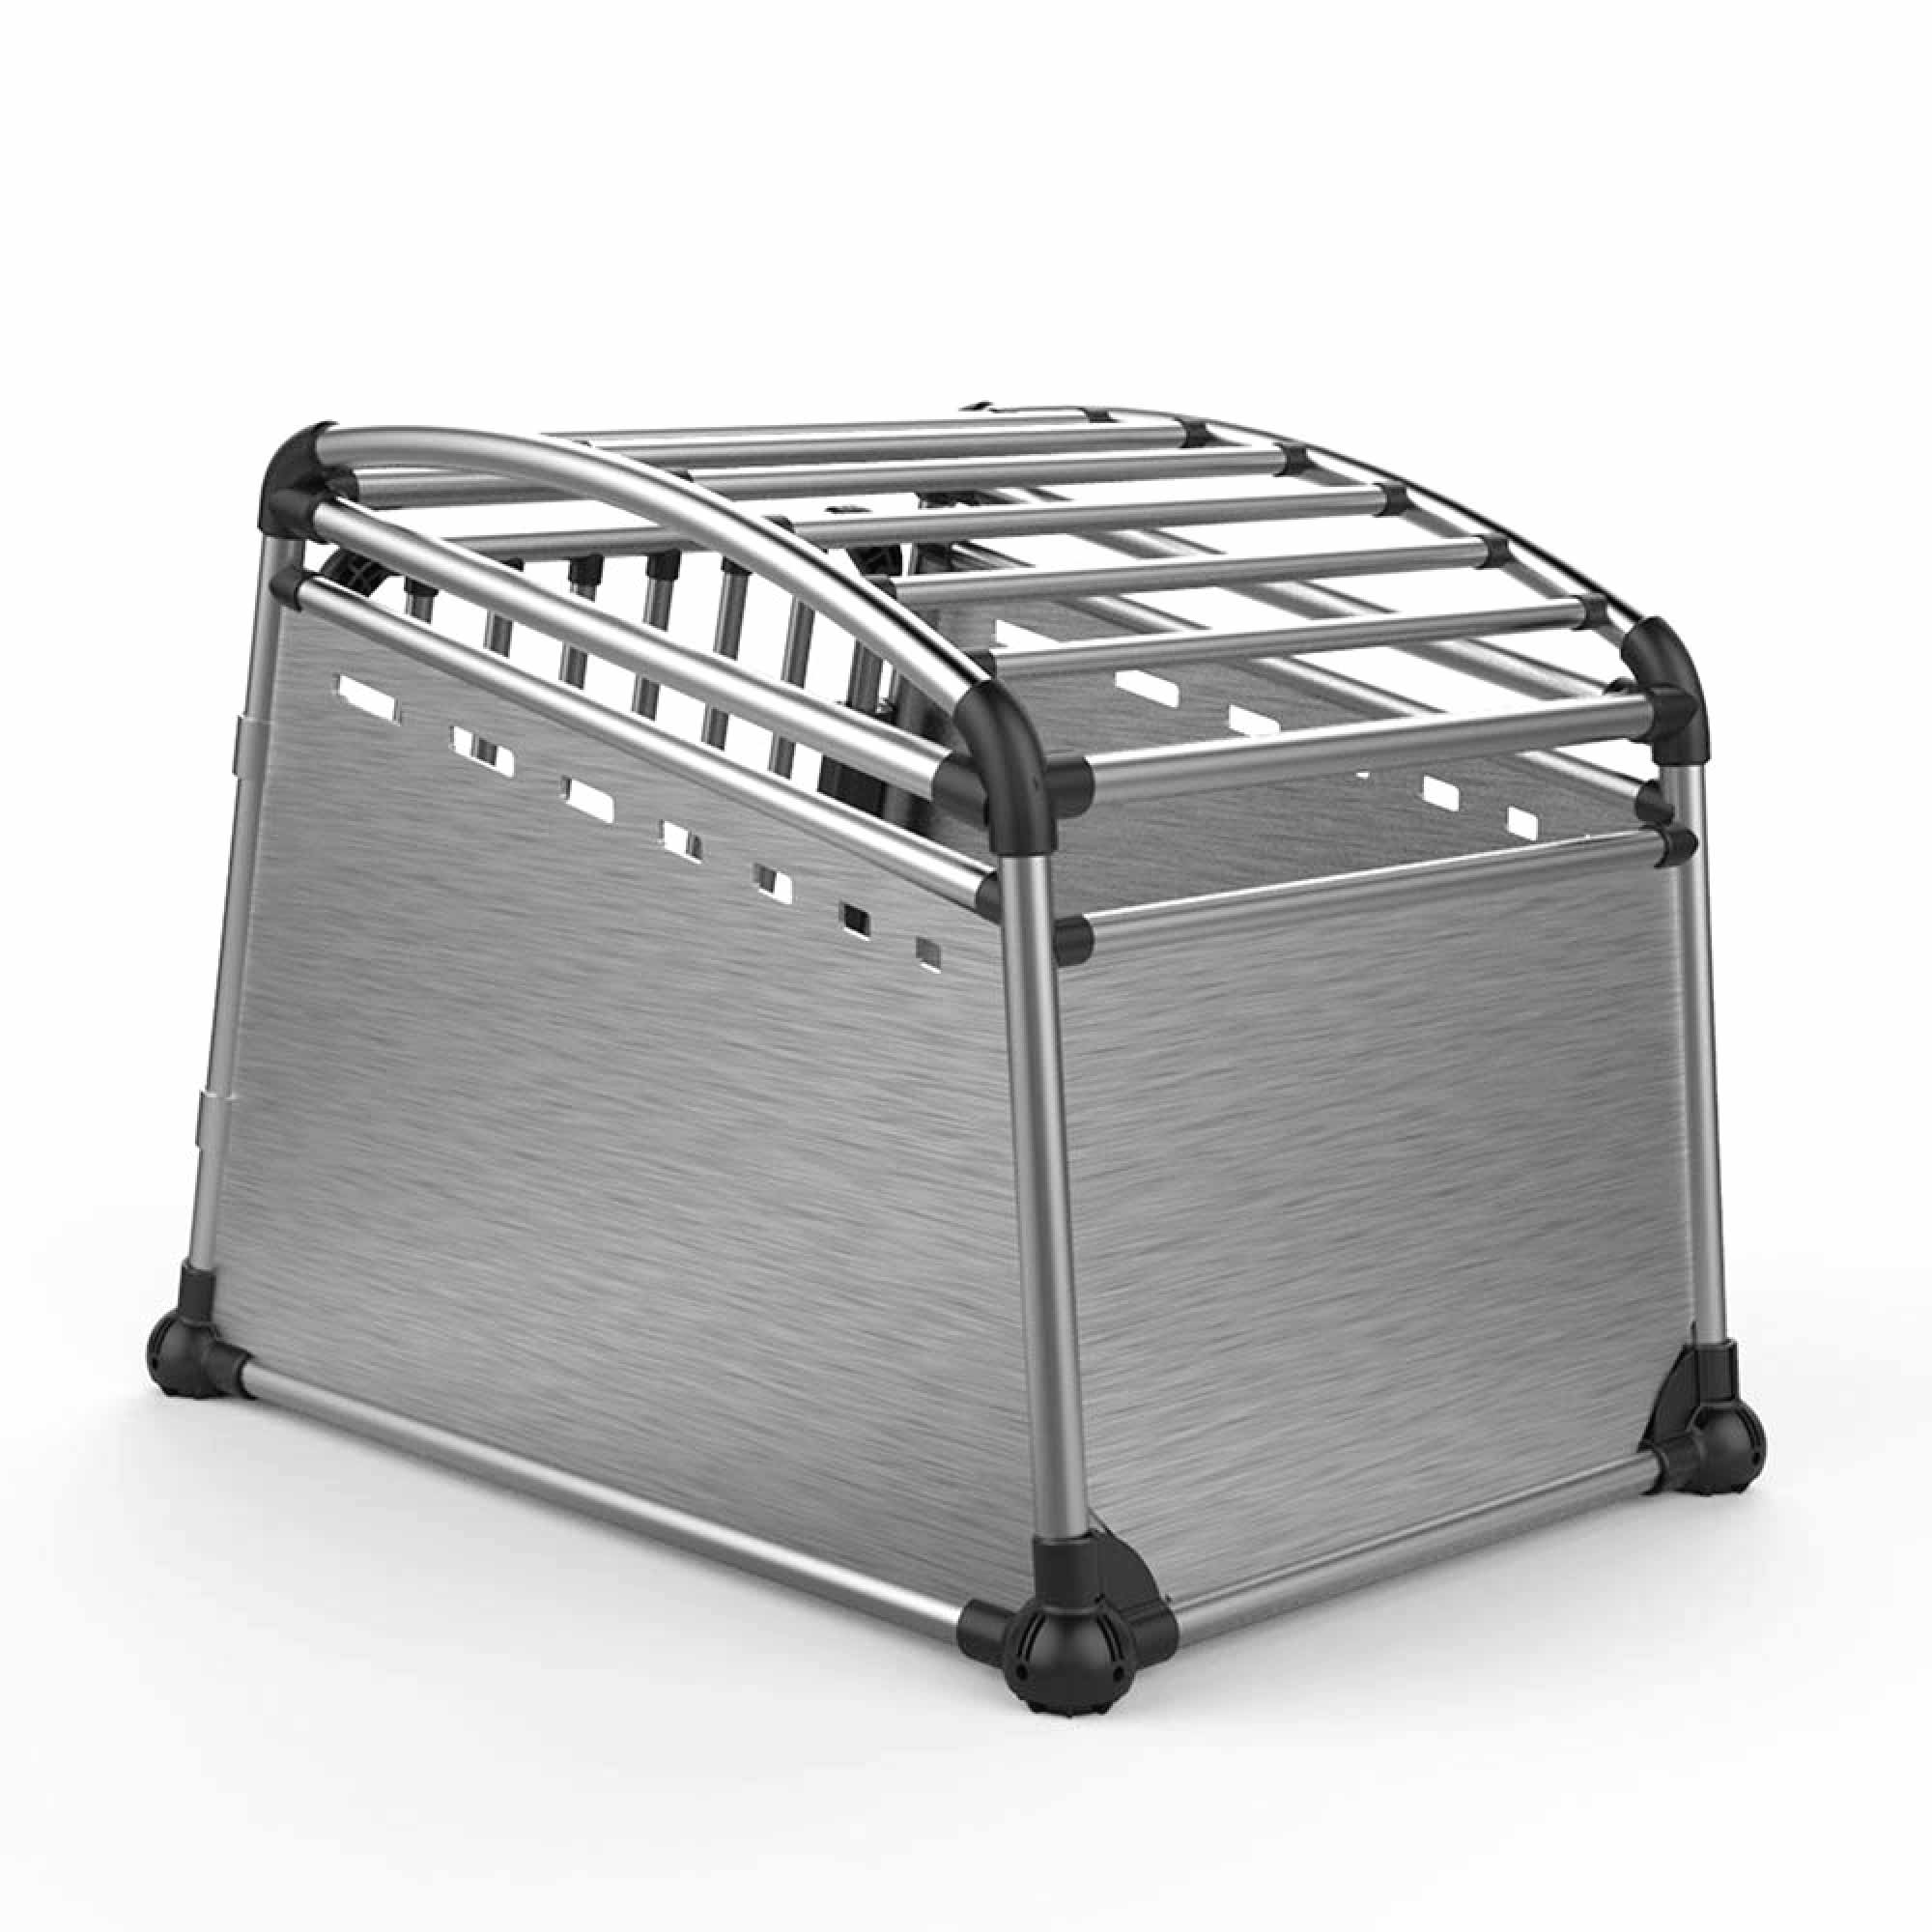 Premium Aluminium Dog Travel Crate - Medium Pet Transport Cage